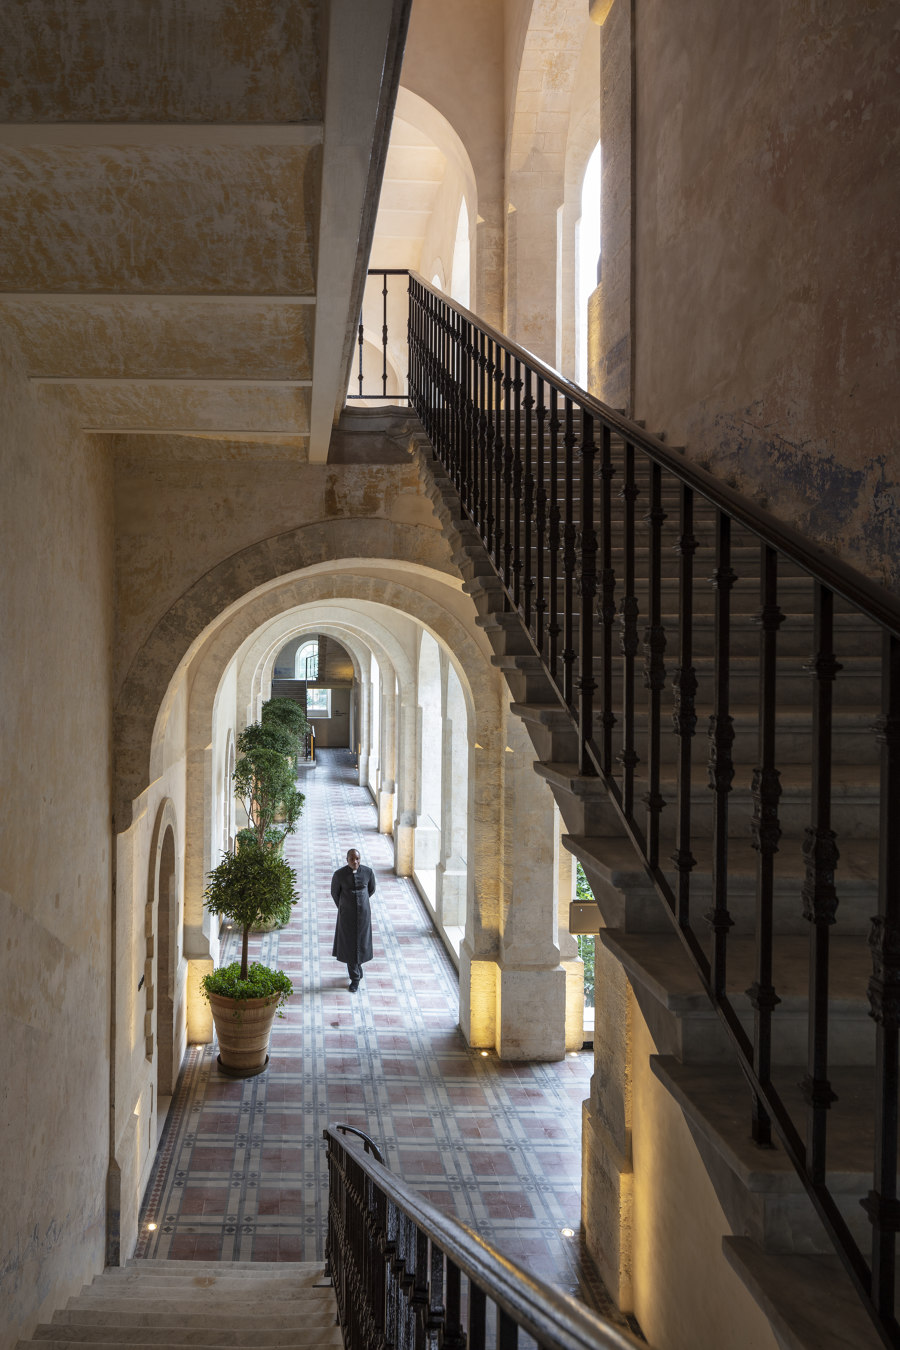 The Jaffa Hotel von John Pawson | Hotels